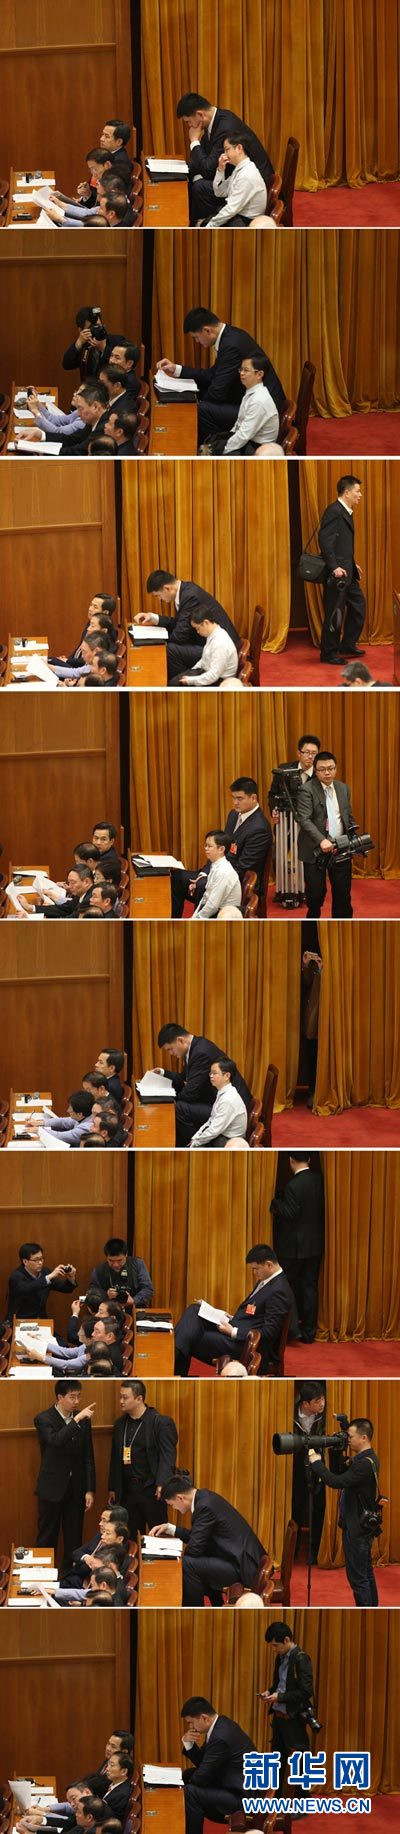 资料图片：3月3日，中国人民政治协商会议第十二届全国委员会第一次会议在北京人民大会堂开幕。为了容下姚明委员高大的身躯，会议方为他准备了一个特别的座位。姚明的座位恰好处在“交通要道”上，记者们来来往往，有的还“盯”上了他，但姚明委员始终专心听会，彰显“淡定姚”本色。 新华社记者 金立旺 摄